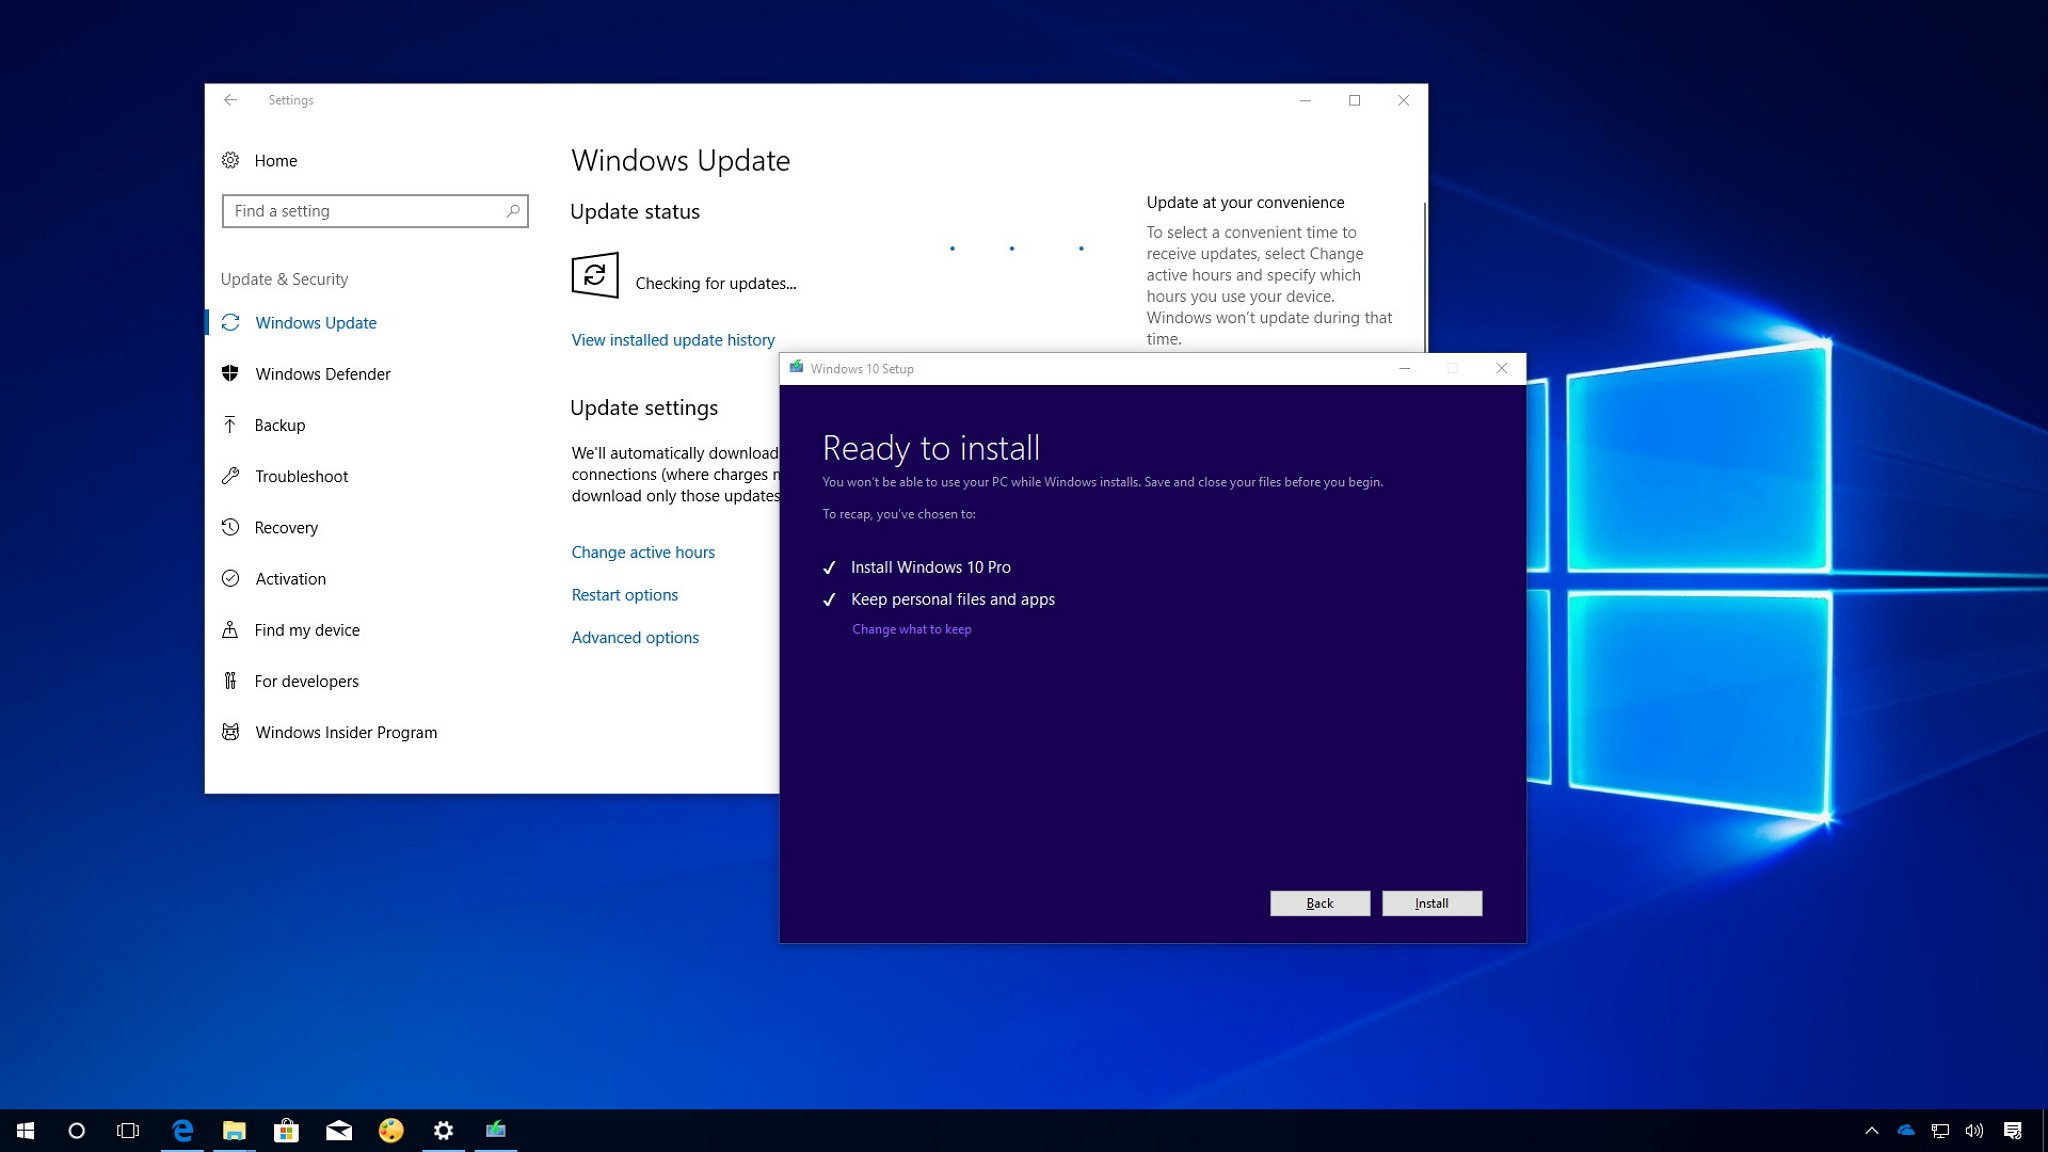 Windows 10 Pro’nun farklı özellikleri nelerdir?